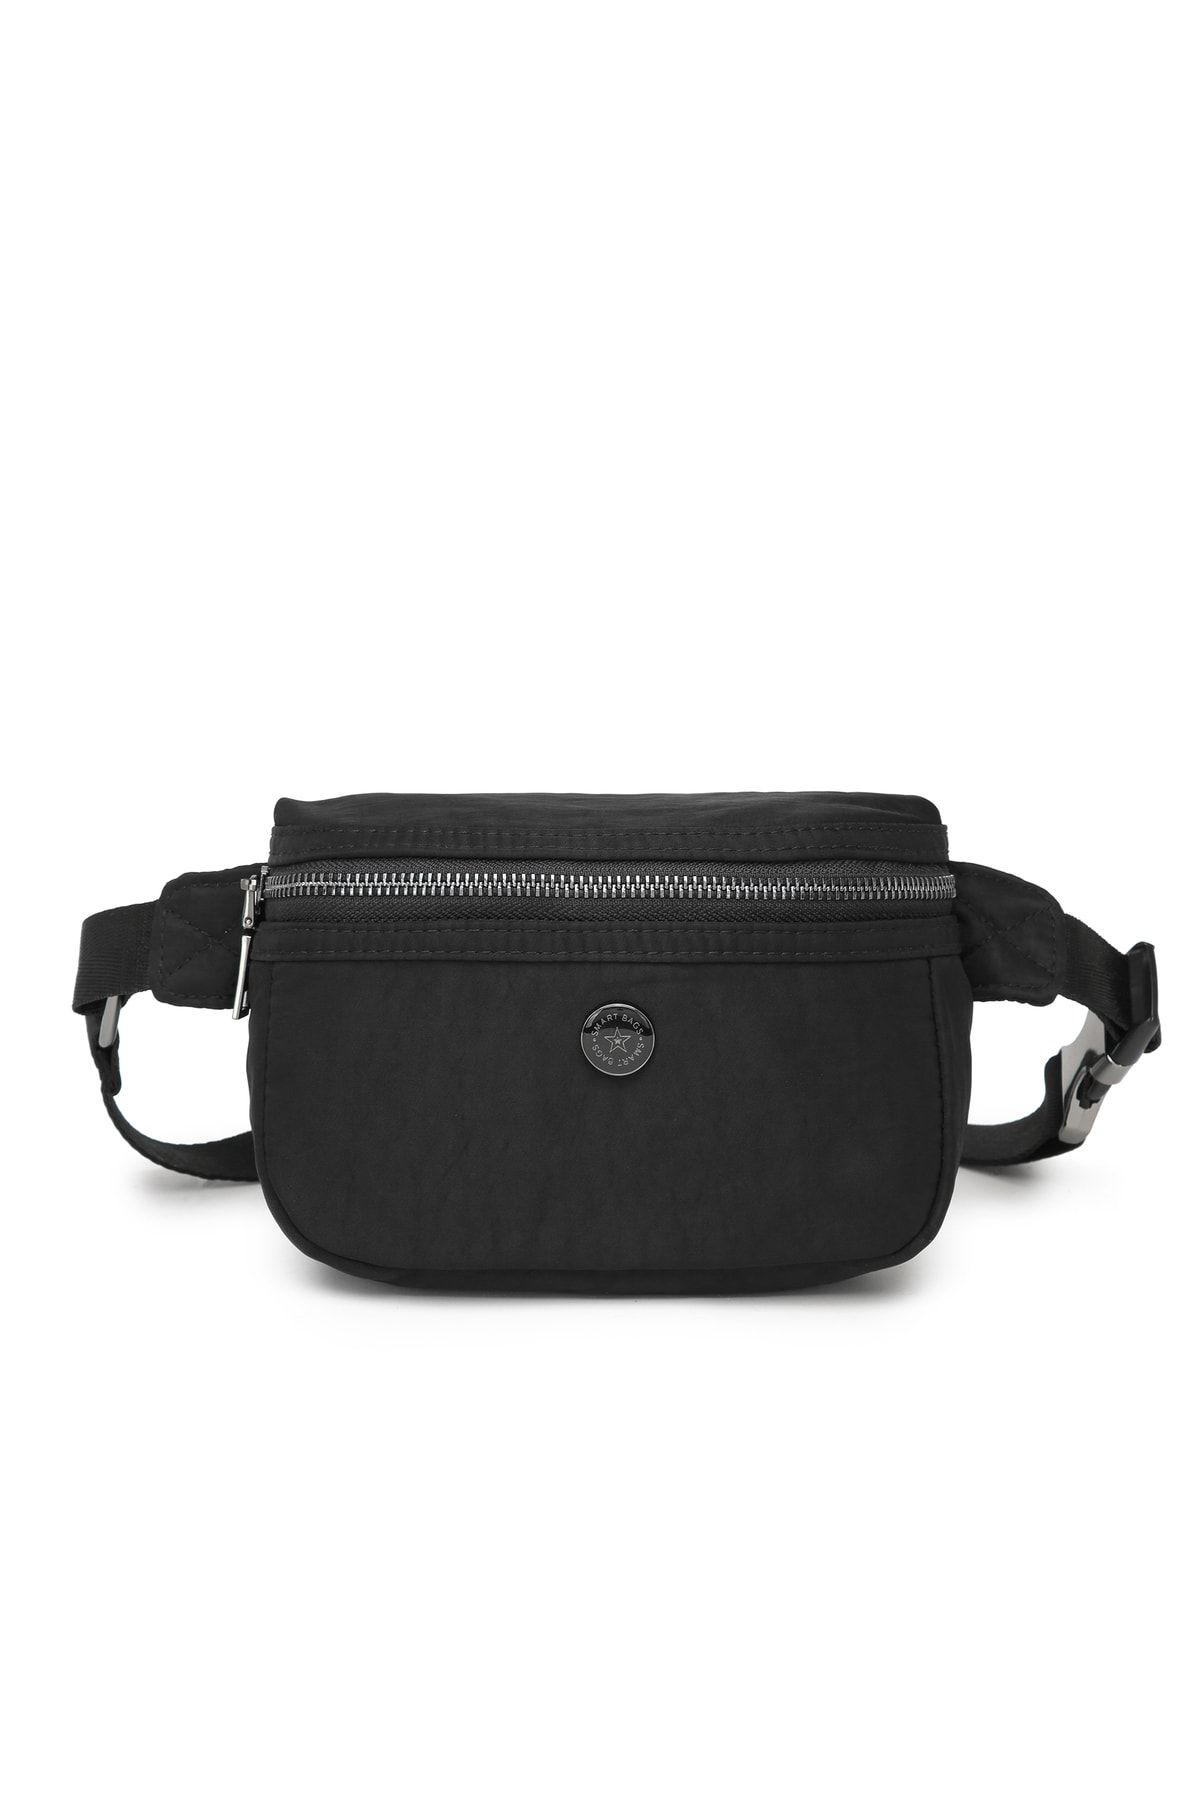 Smart Bags Kumaş Kadın Bodybag Bel Çantası 3130 Siyah